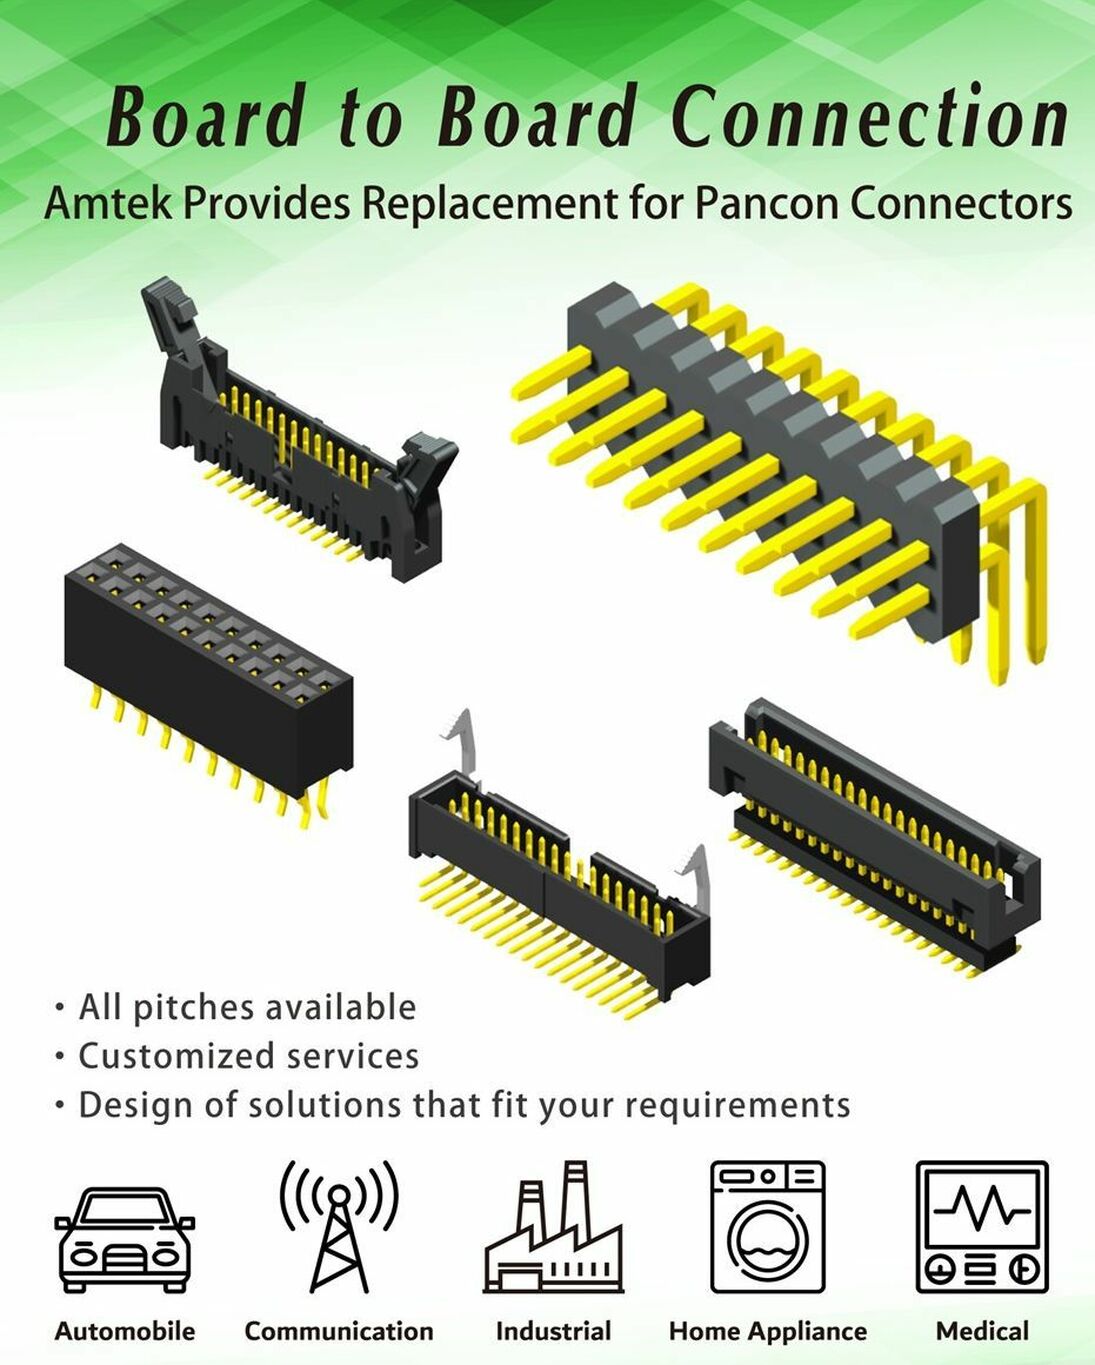 Amtek board to board connectors